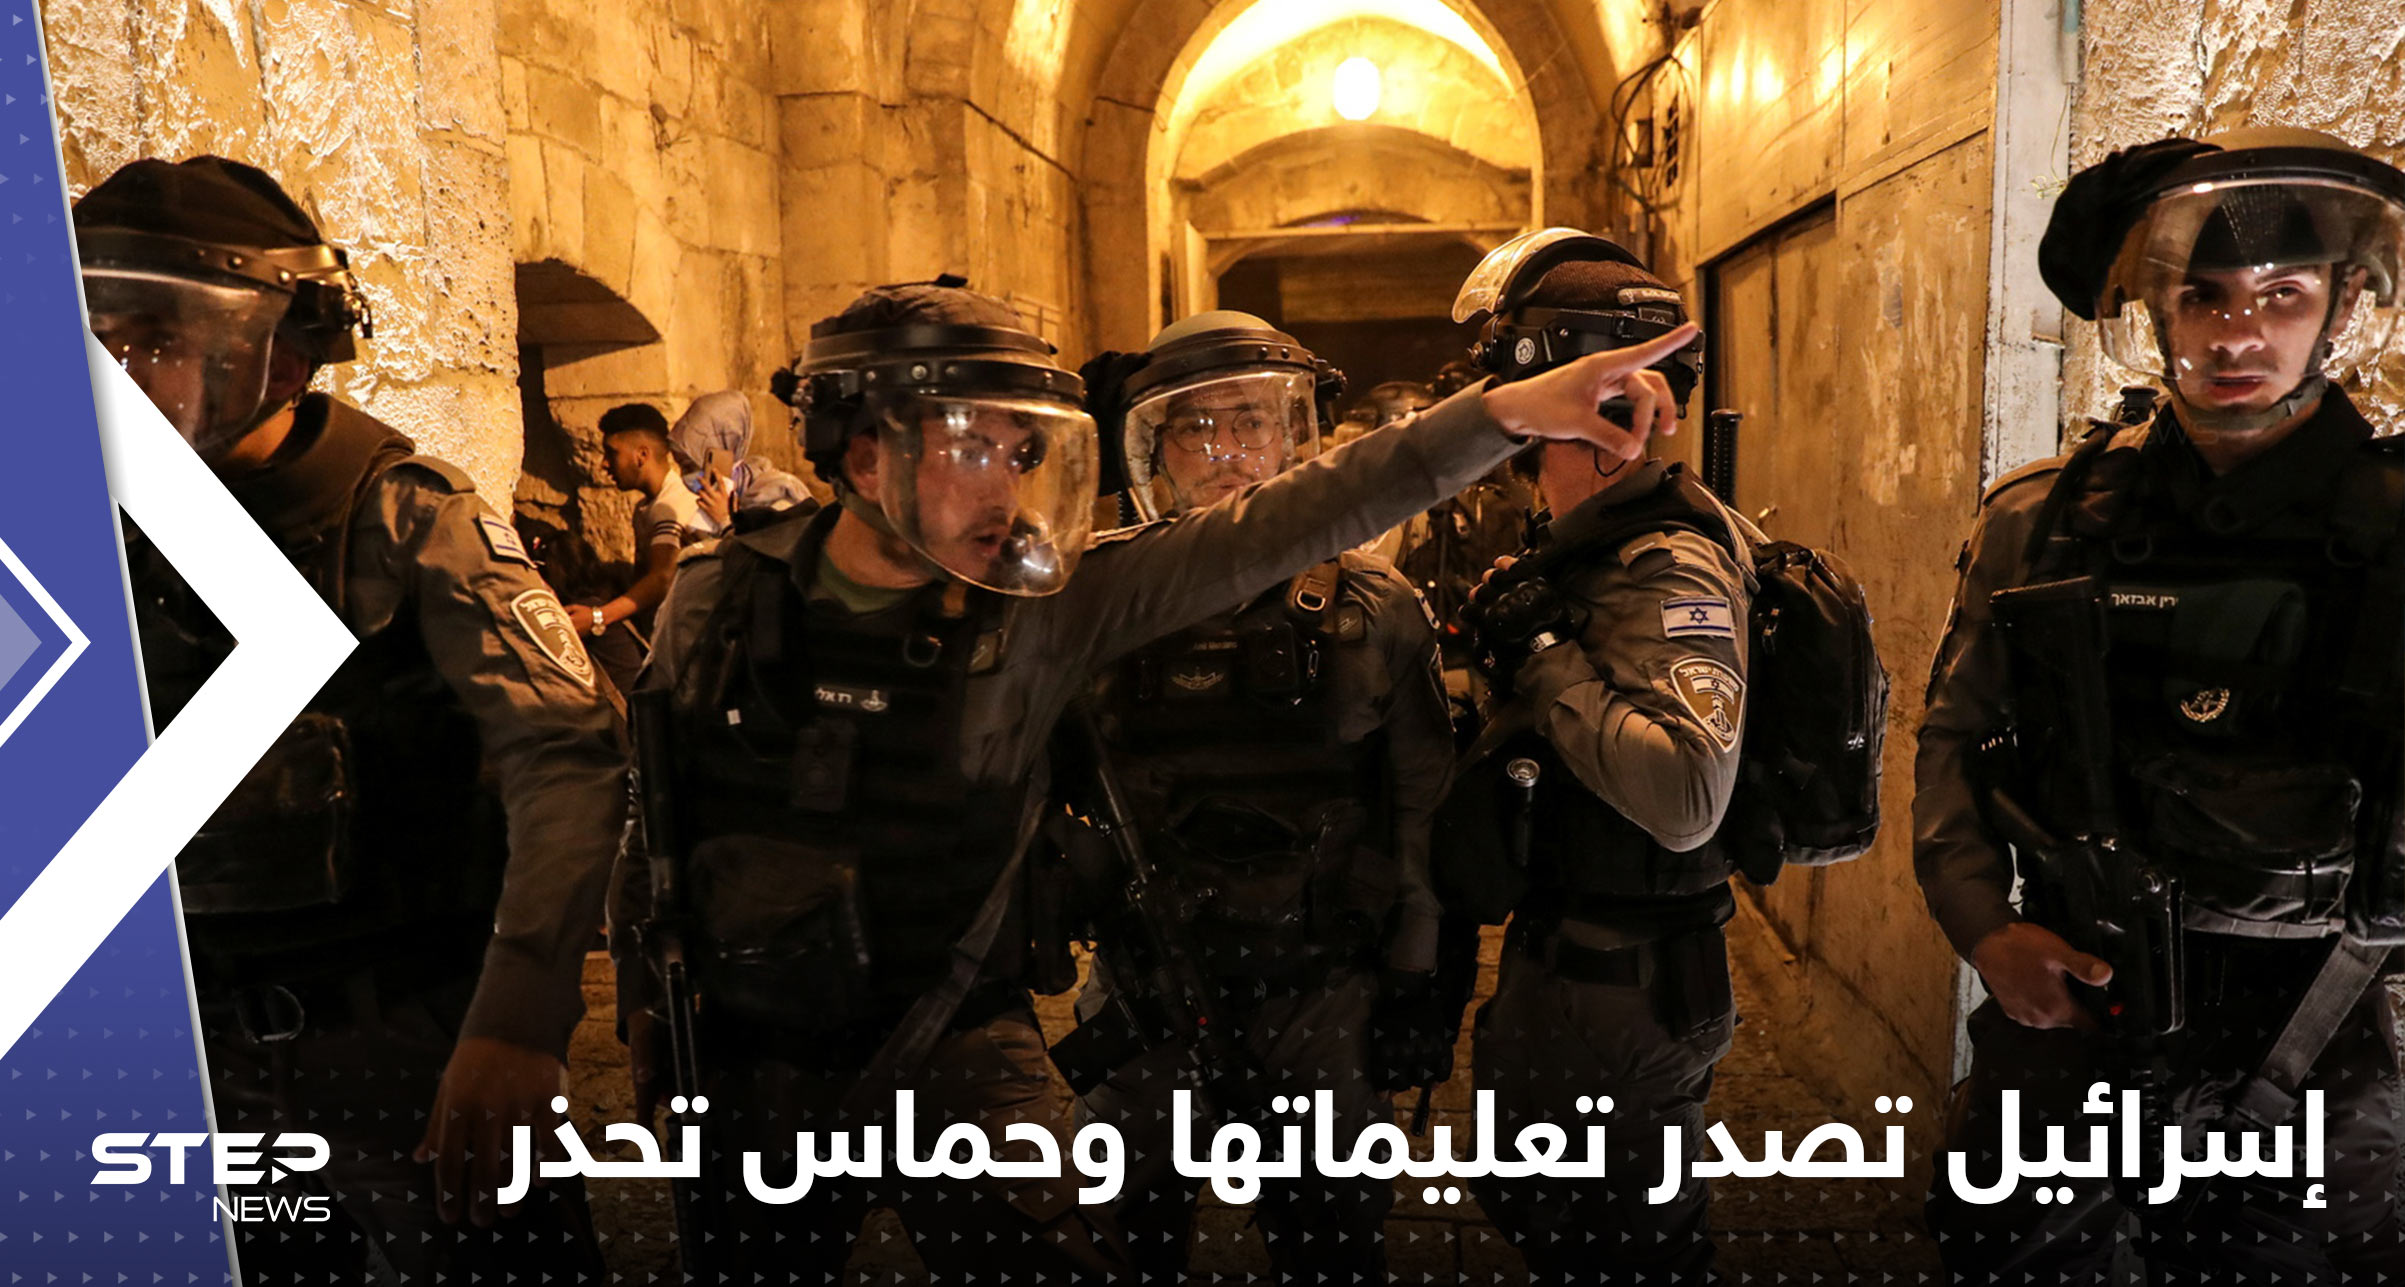 بن غفير يأمر الشرطة الإسرائيلية بتنفيذ 3 تعليمات فوراً.. وحركة حماس تحذر تل أبيب